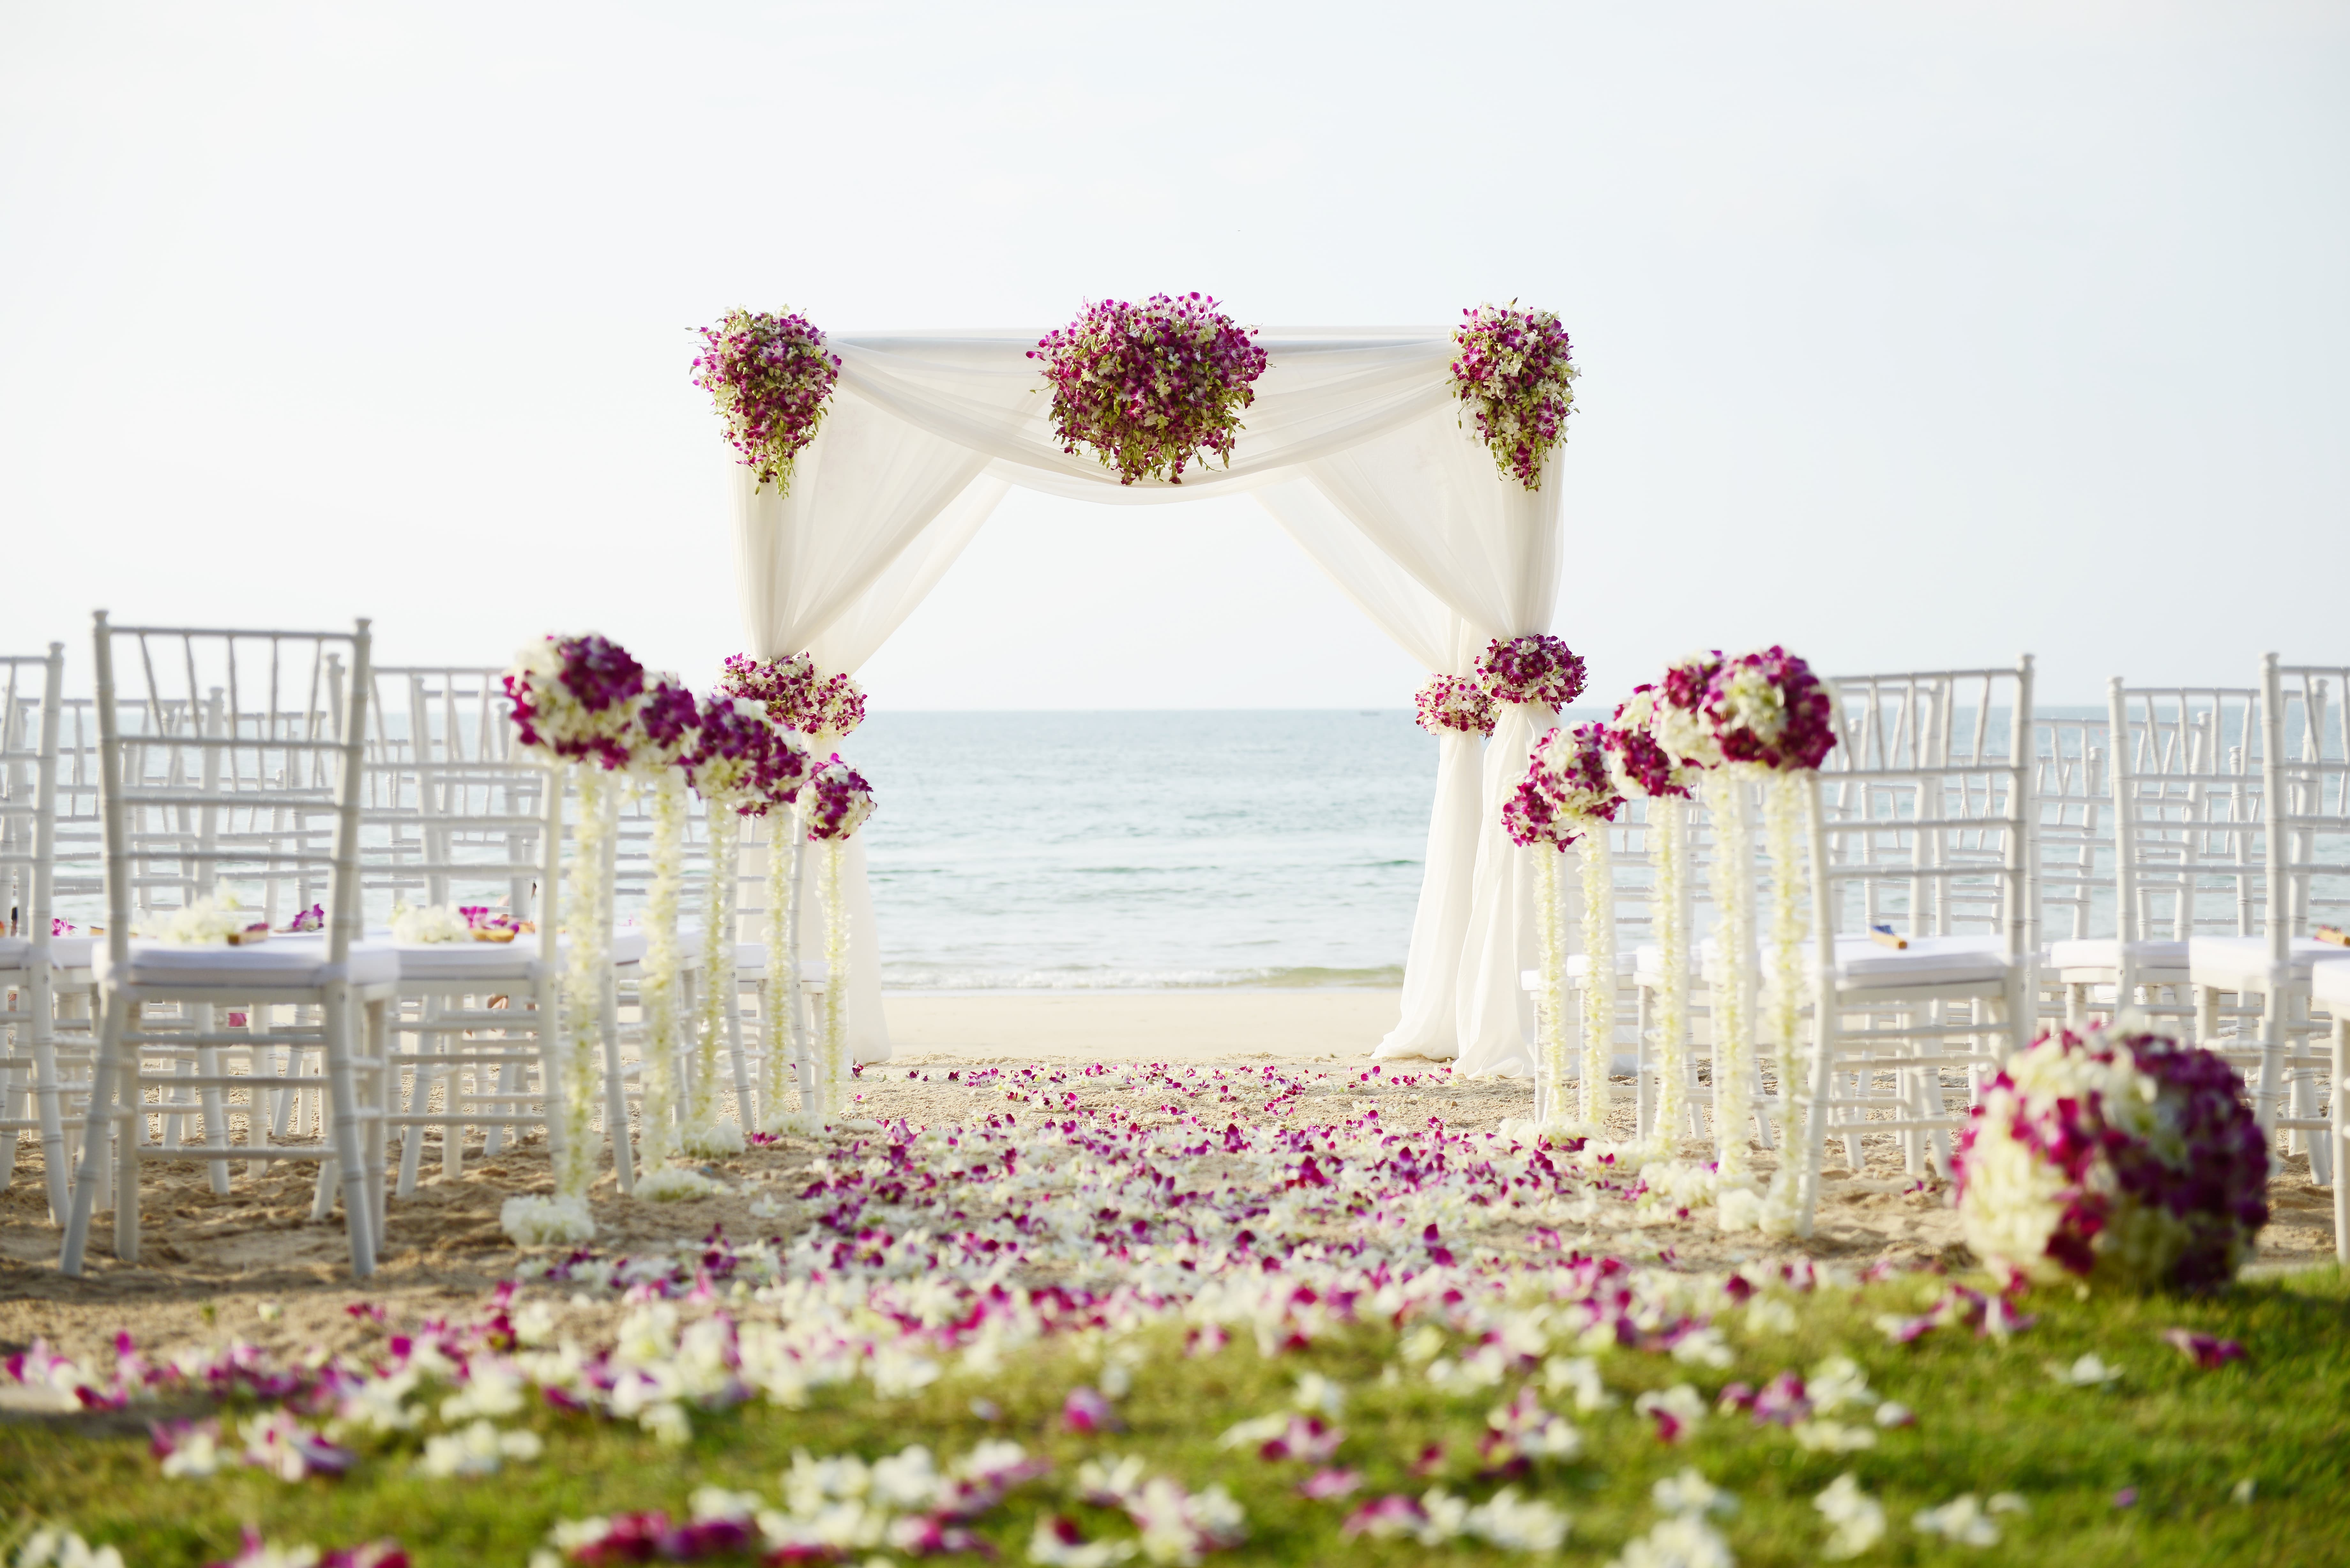 Aufbau einer Hochzeit am Strand mit Blumendekoration